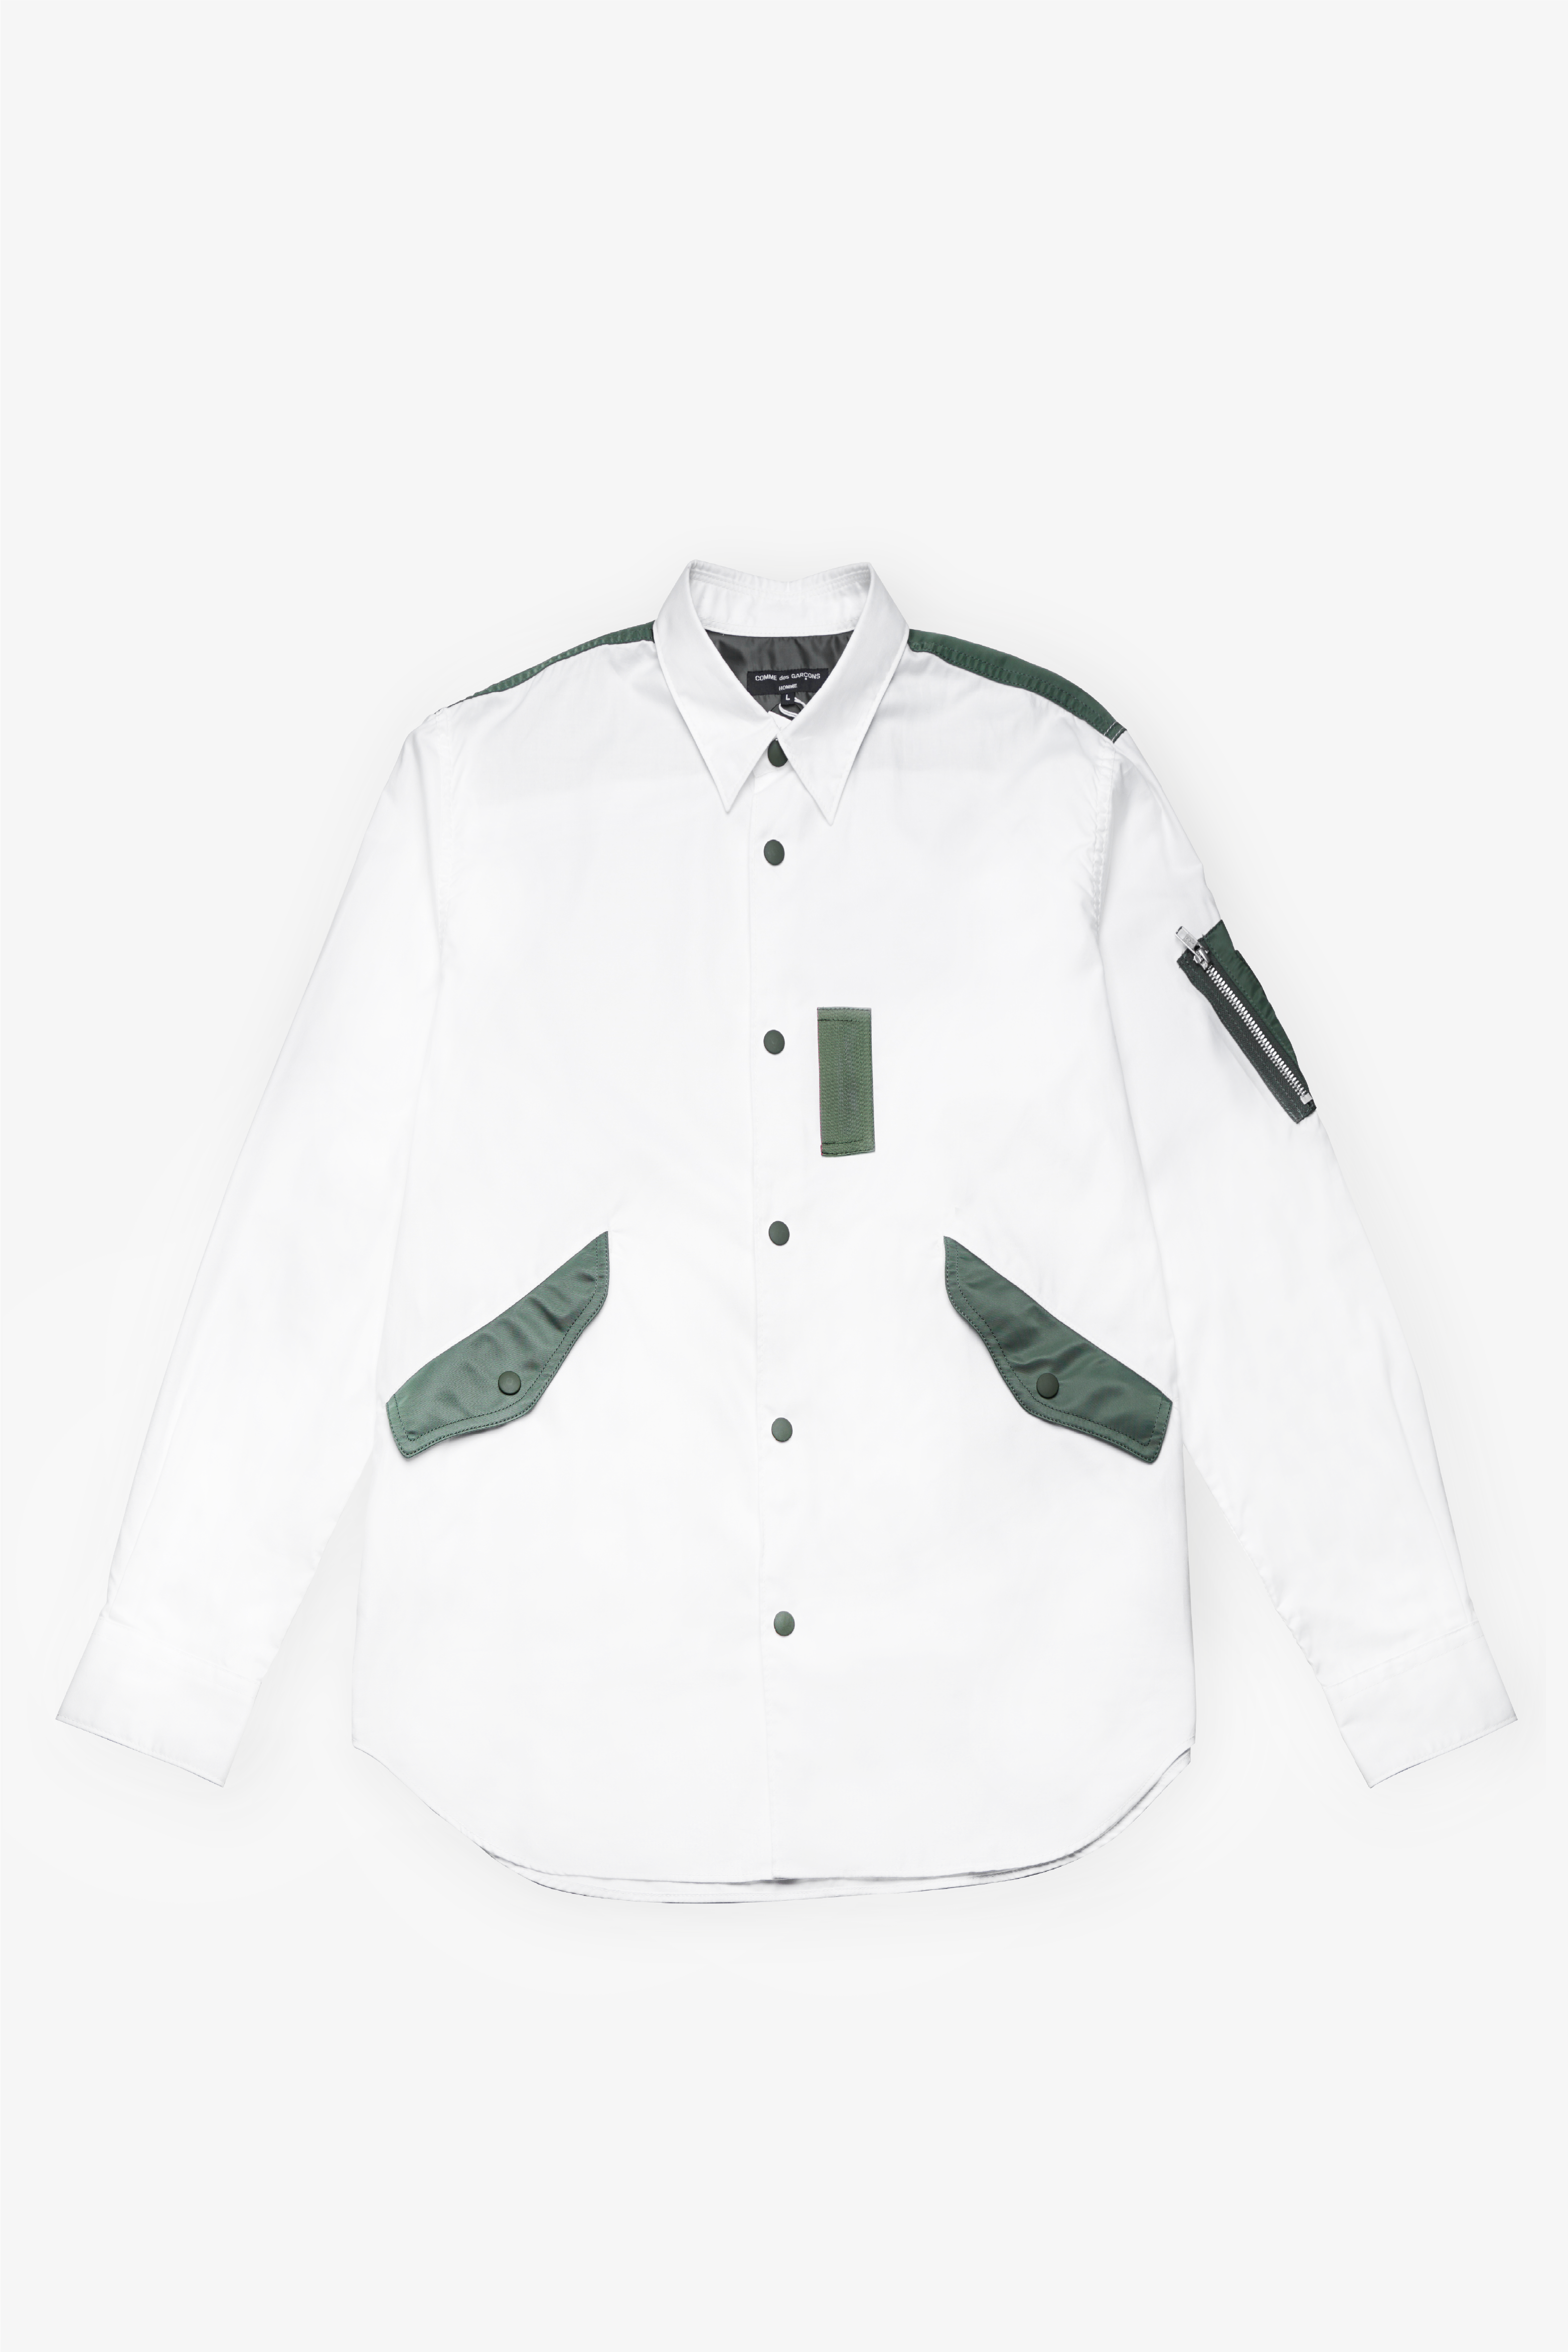 Selectshop FRAME - COMME DES GARCONS HOMME Nylon Patch Shirt Shirts Dubai